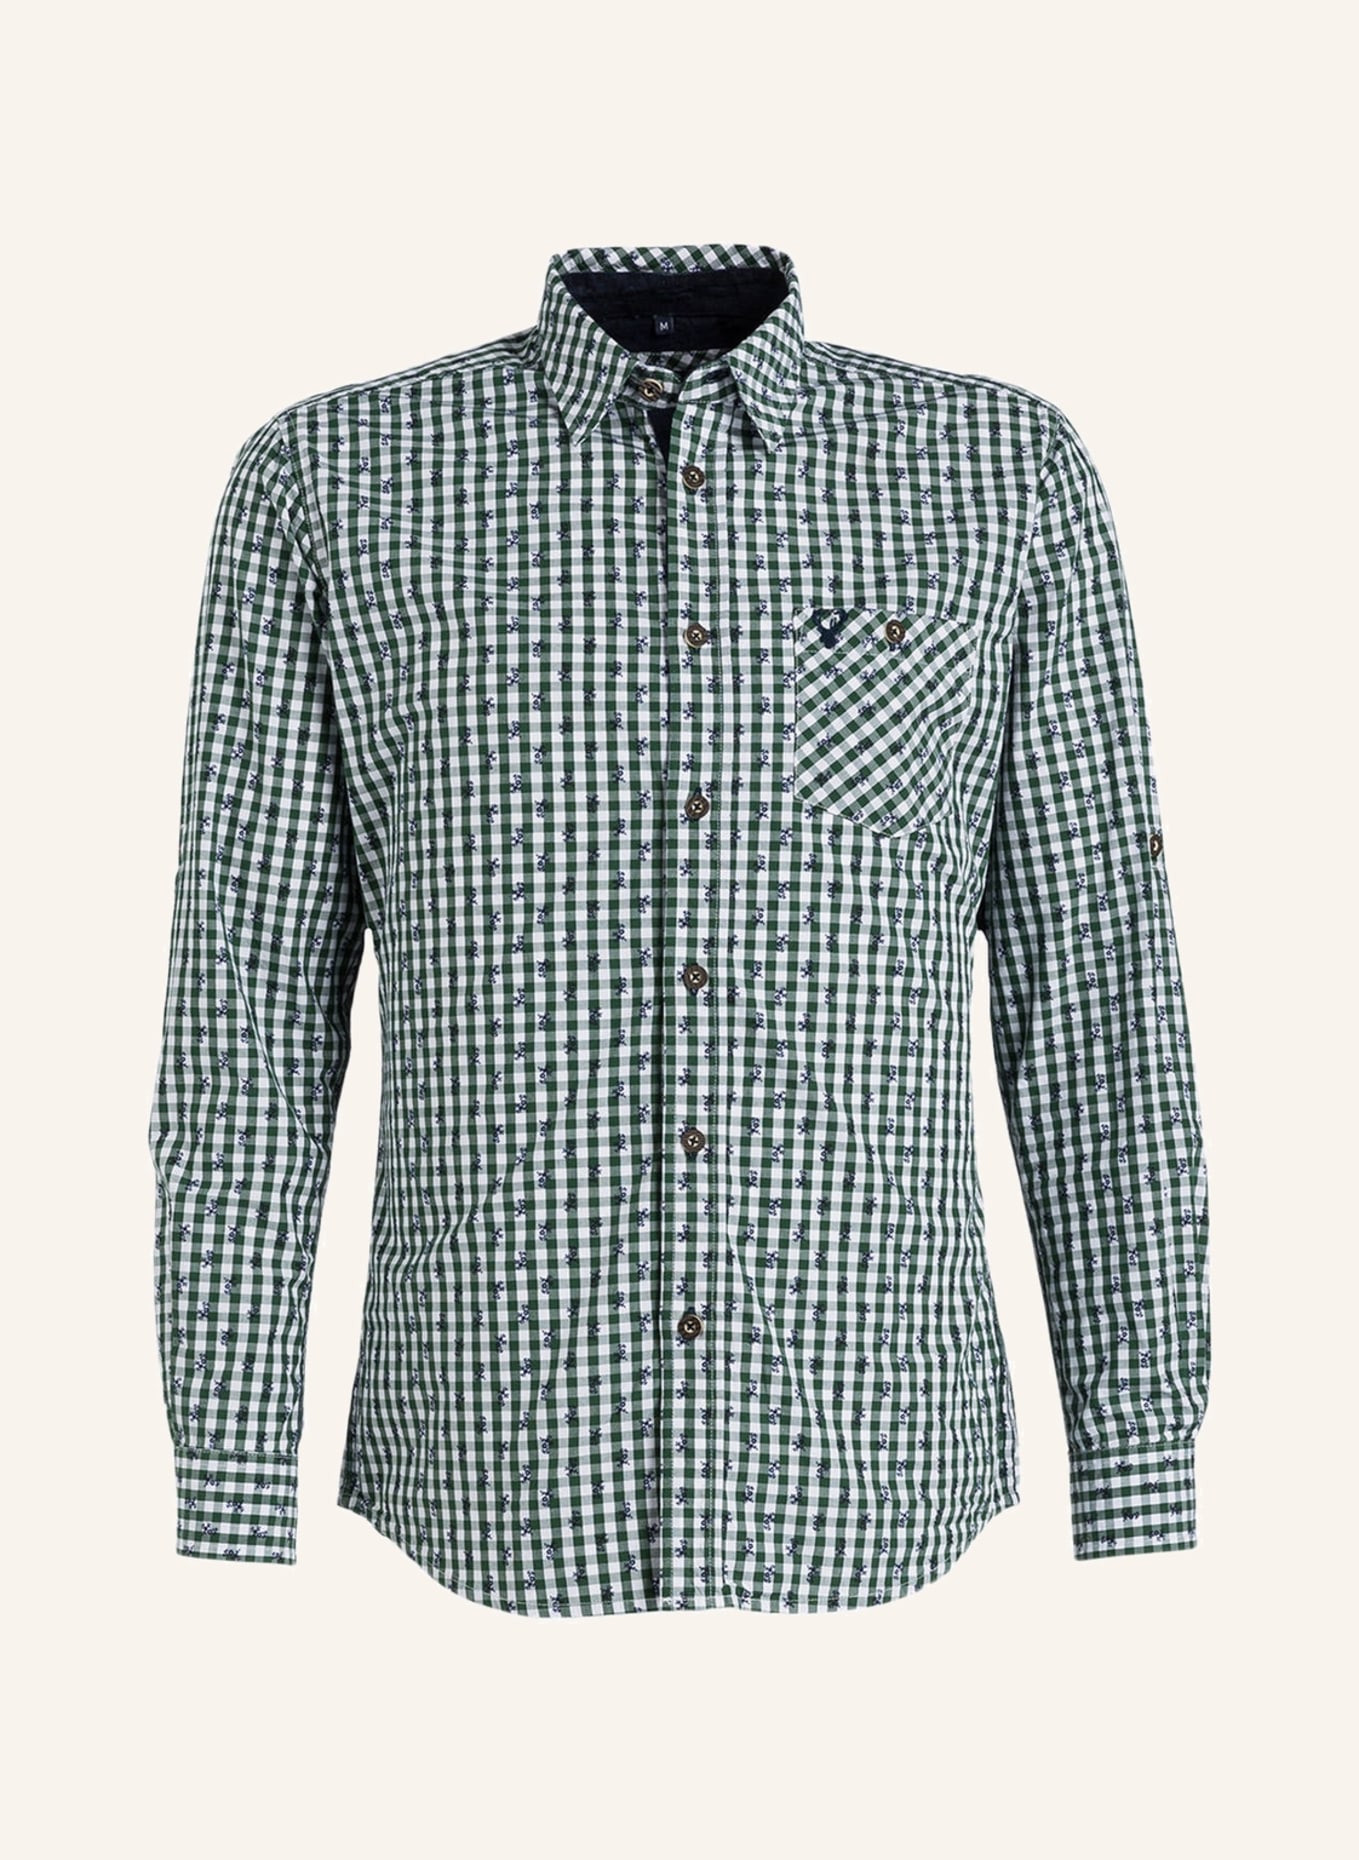 KRÜGER Trachten shirt , Color: 105 weiß-grün (Image 1)